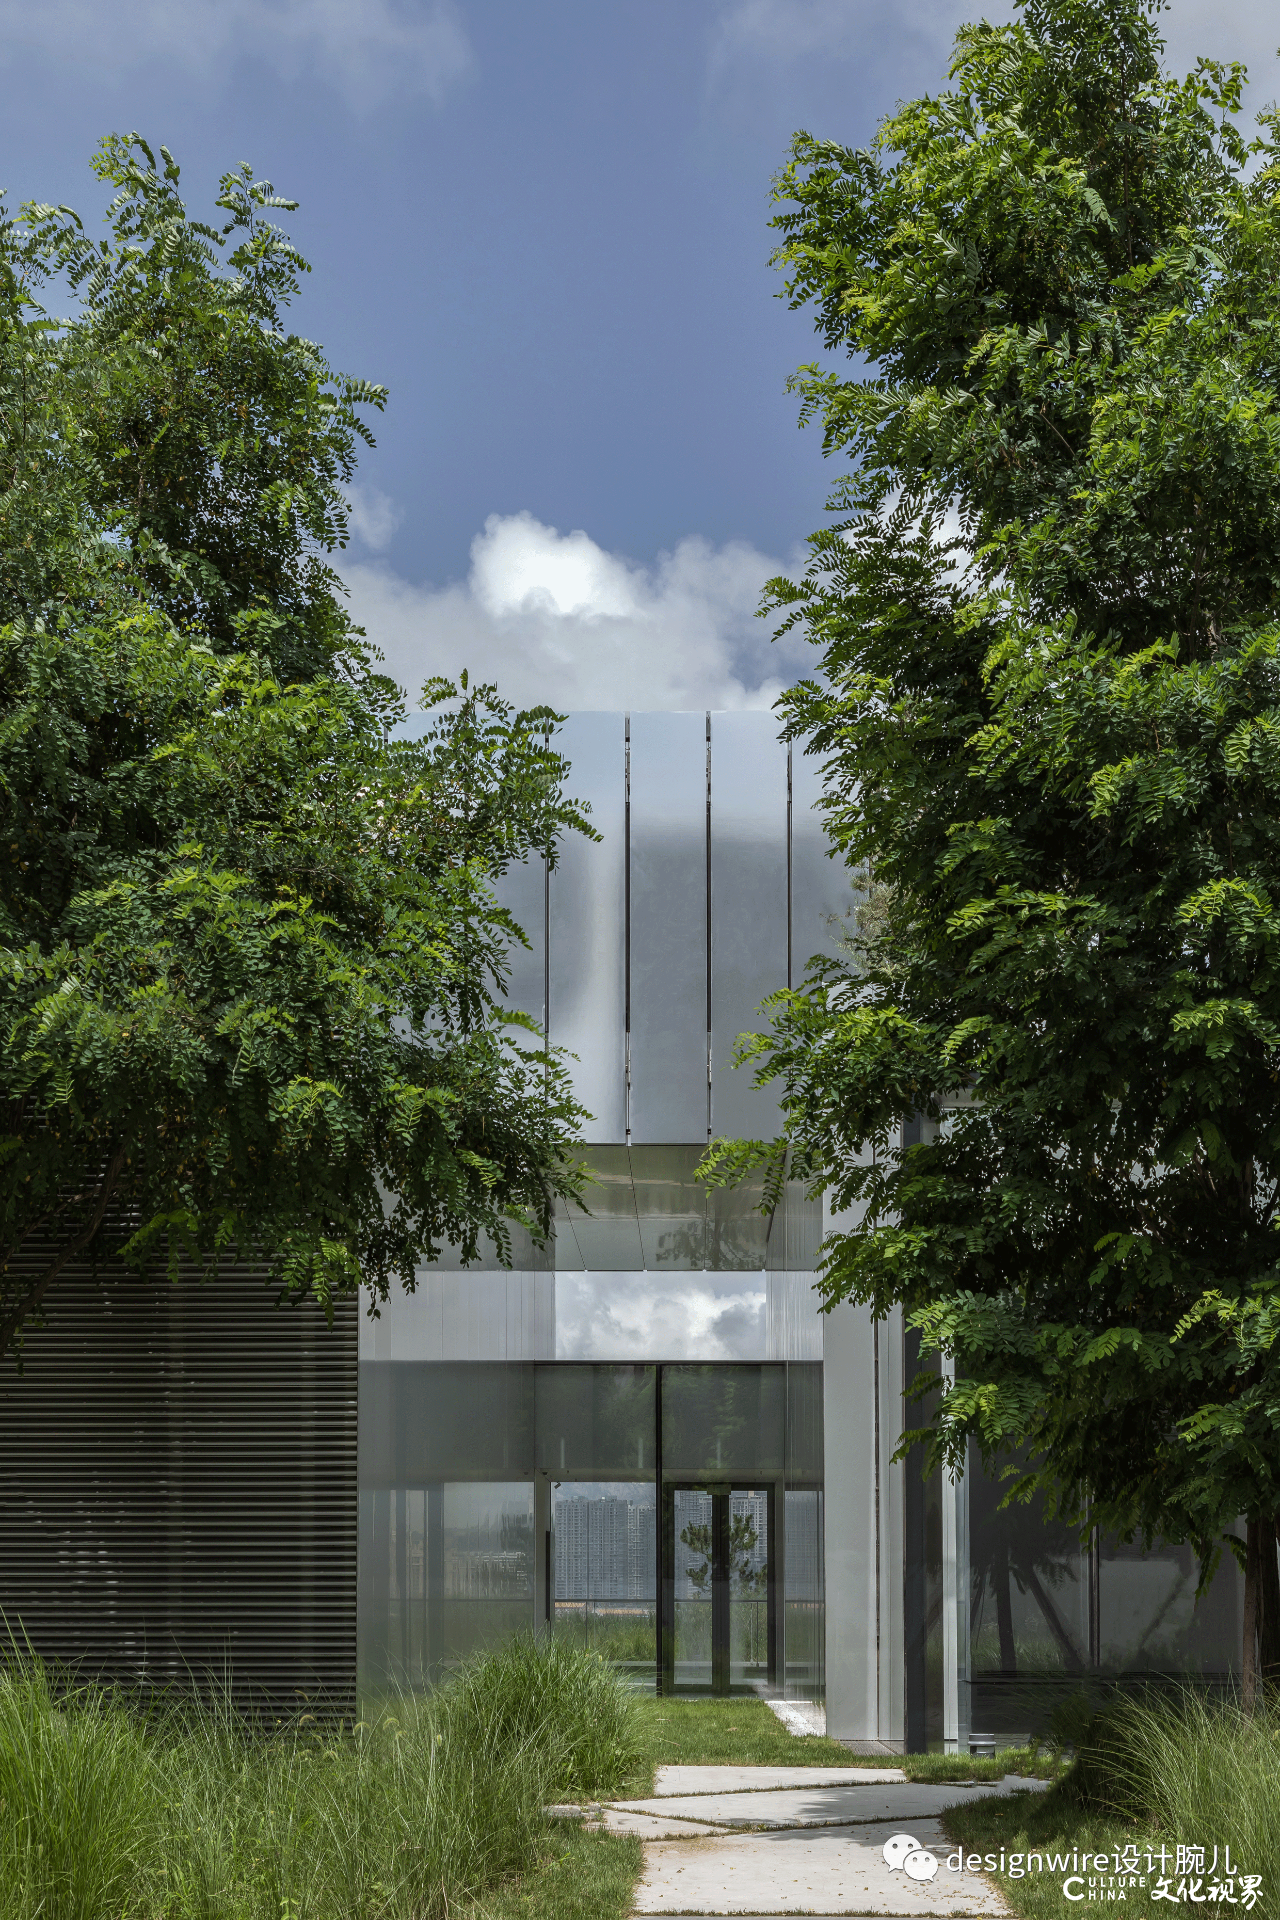 普利兹克奖得主让·努维尔“操刀”，青岛西海美术馆正式开放